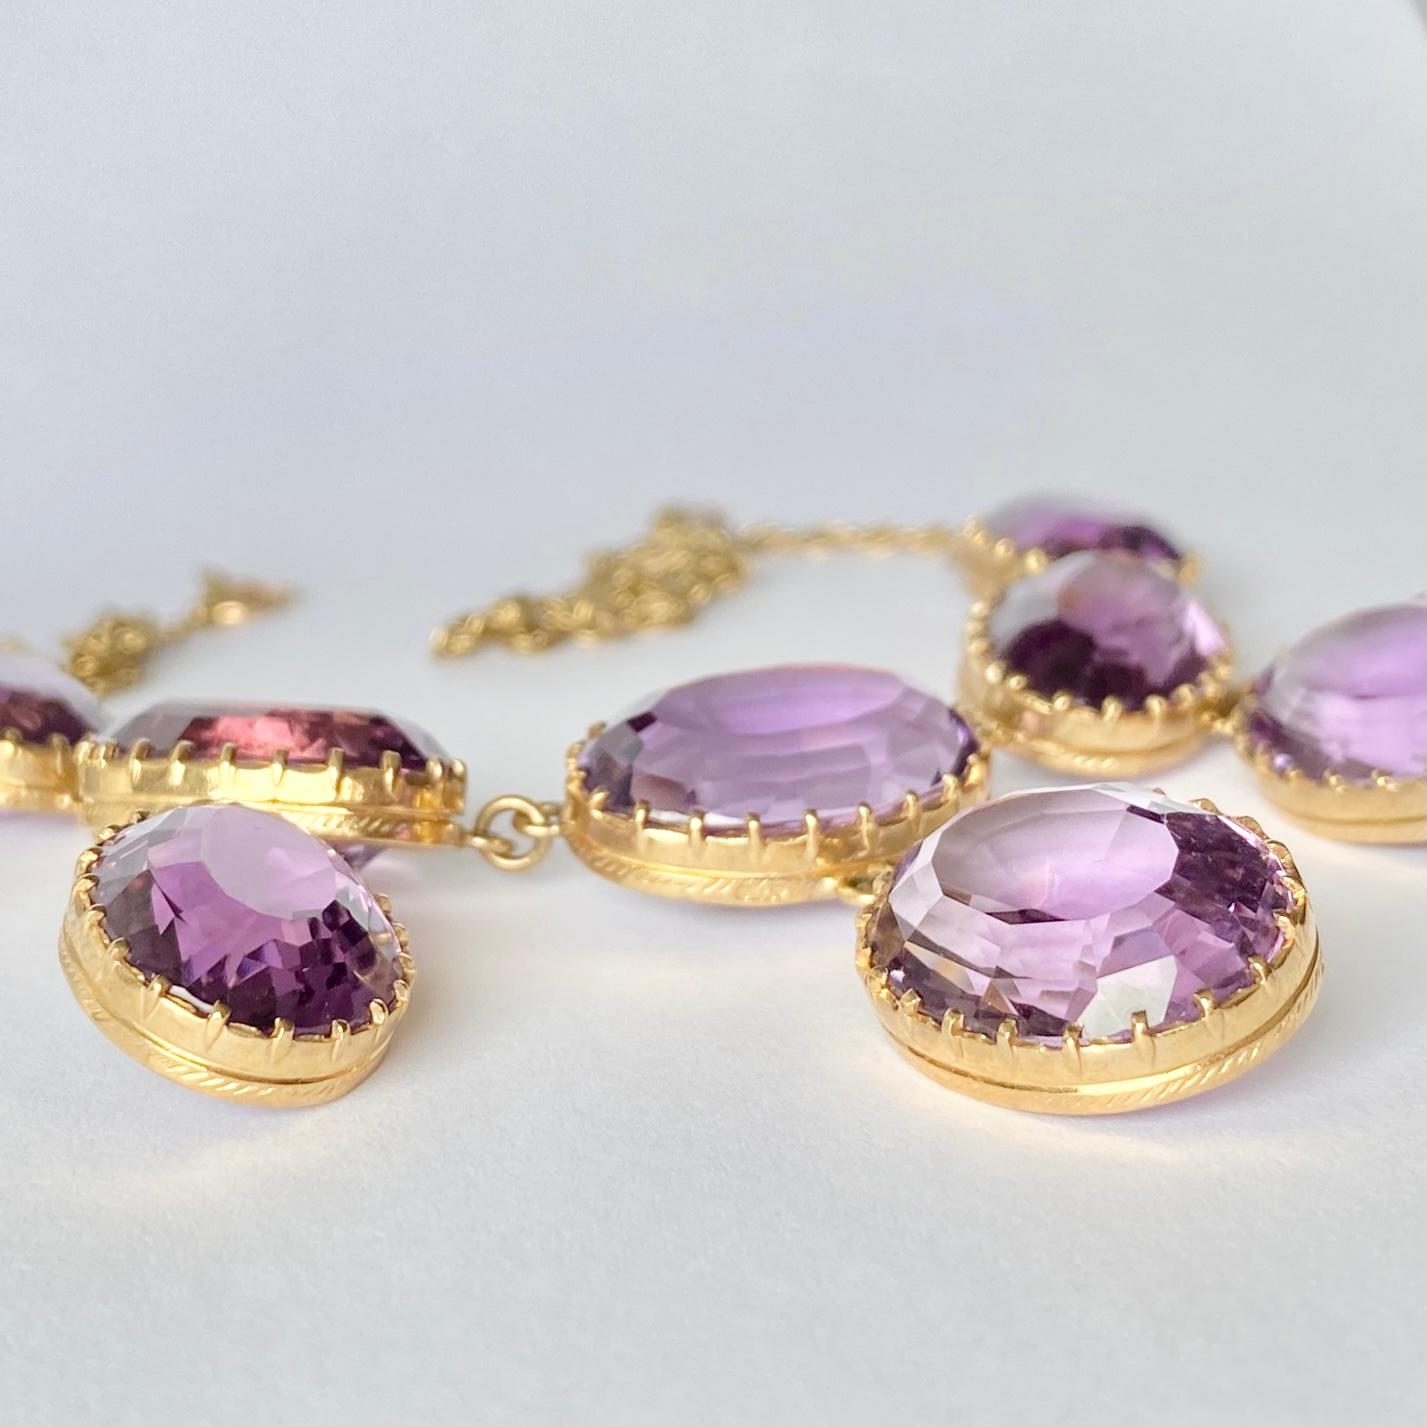 Sept superbes pierres d'améthyste violettes brillantes ornent ce collier. La chaîne en or 9ct est délicate par rapport aux pierres épaisses et se ferme à l'aide d'un fermoir à boulon.

Longueur : 47,5 cm
Dimensions des pierres : 16x12 -